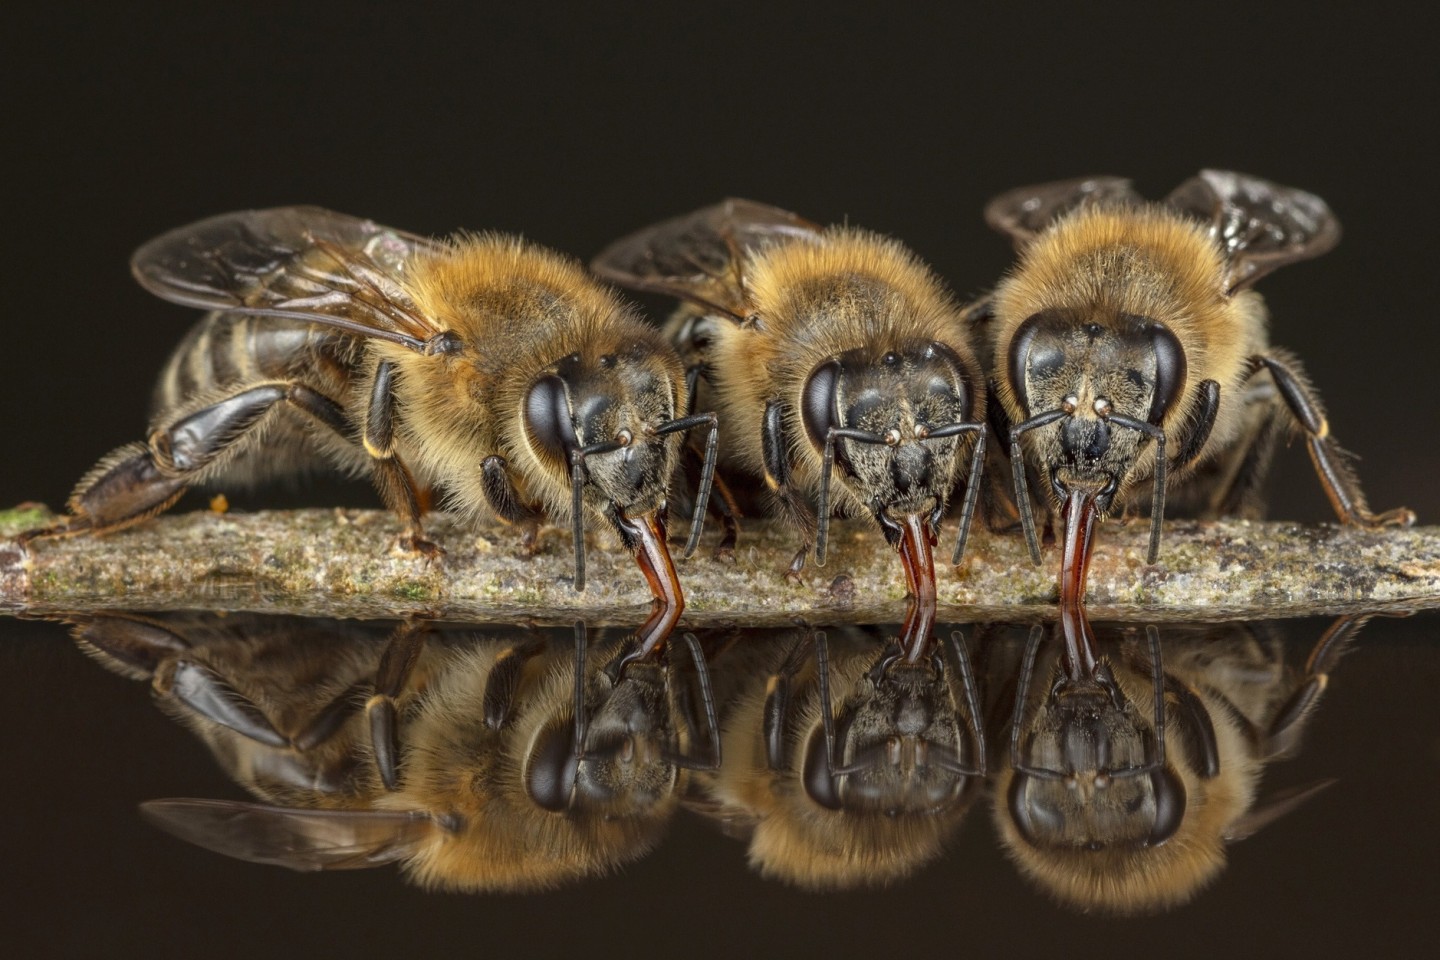 Die Wassersammlerinnen füllen ihre Honigblase mit Wasser auf und fliegen damit zum Stock zurück. Wenn es heiß ist, kühlen die Insekten mit Wasser ihren Stock, um die Brut zu schützen. © Ingo Arndt.